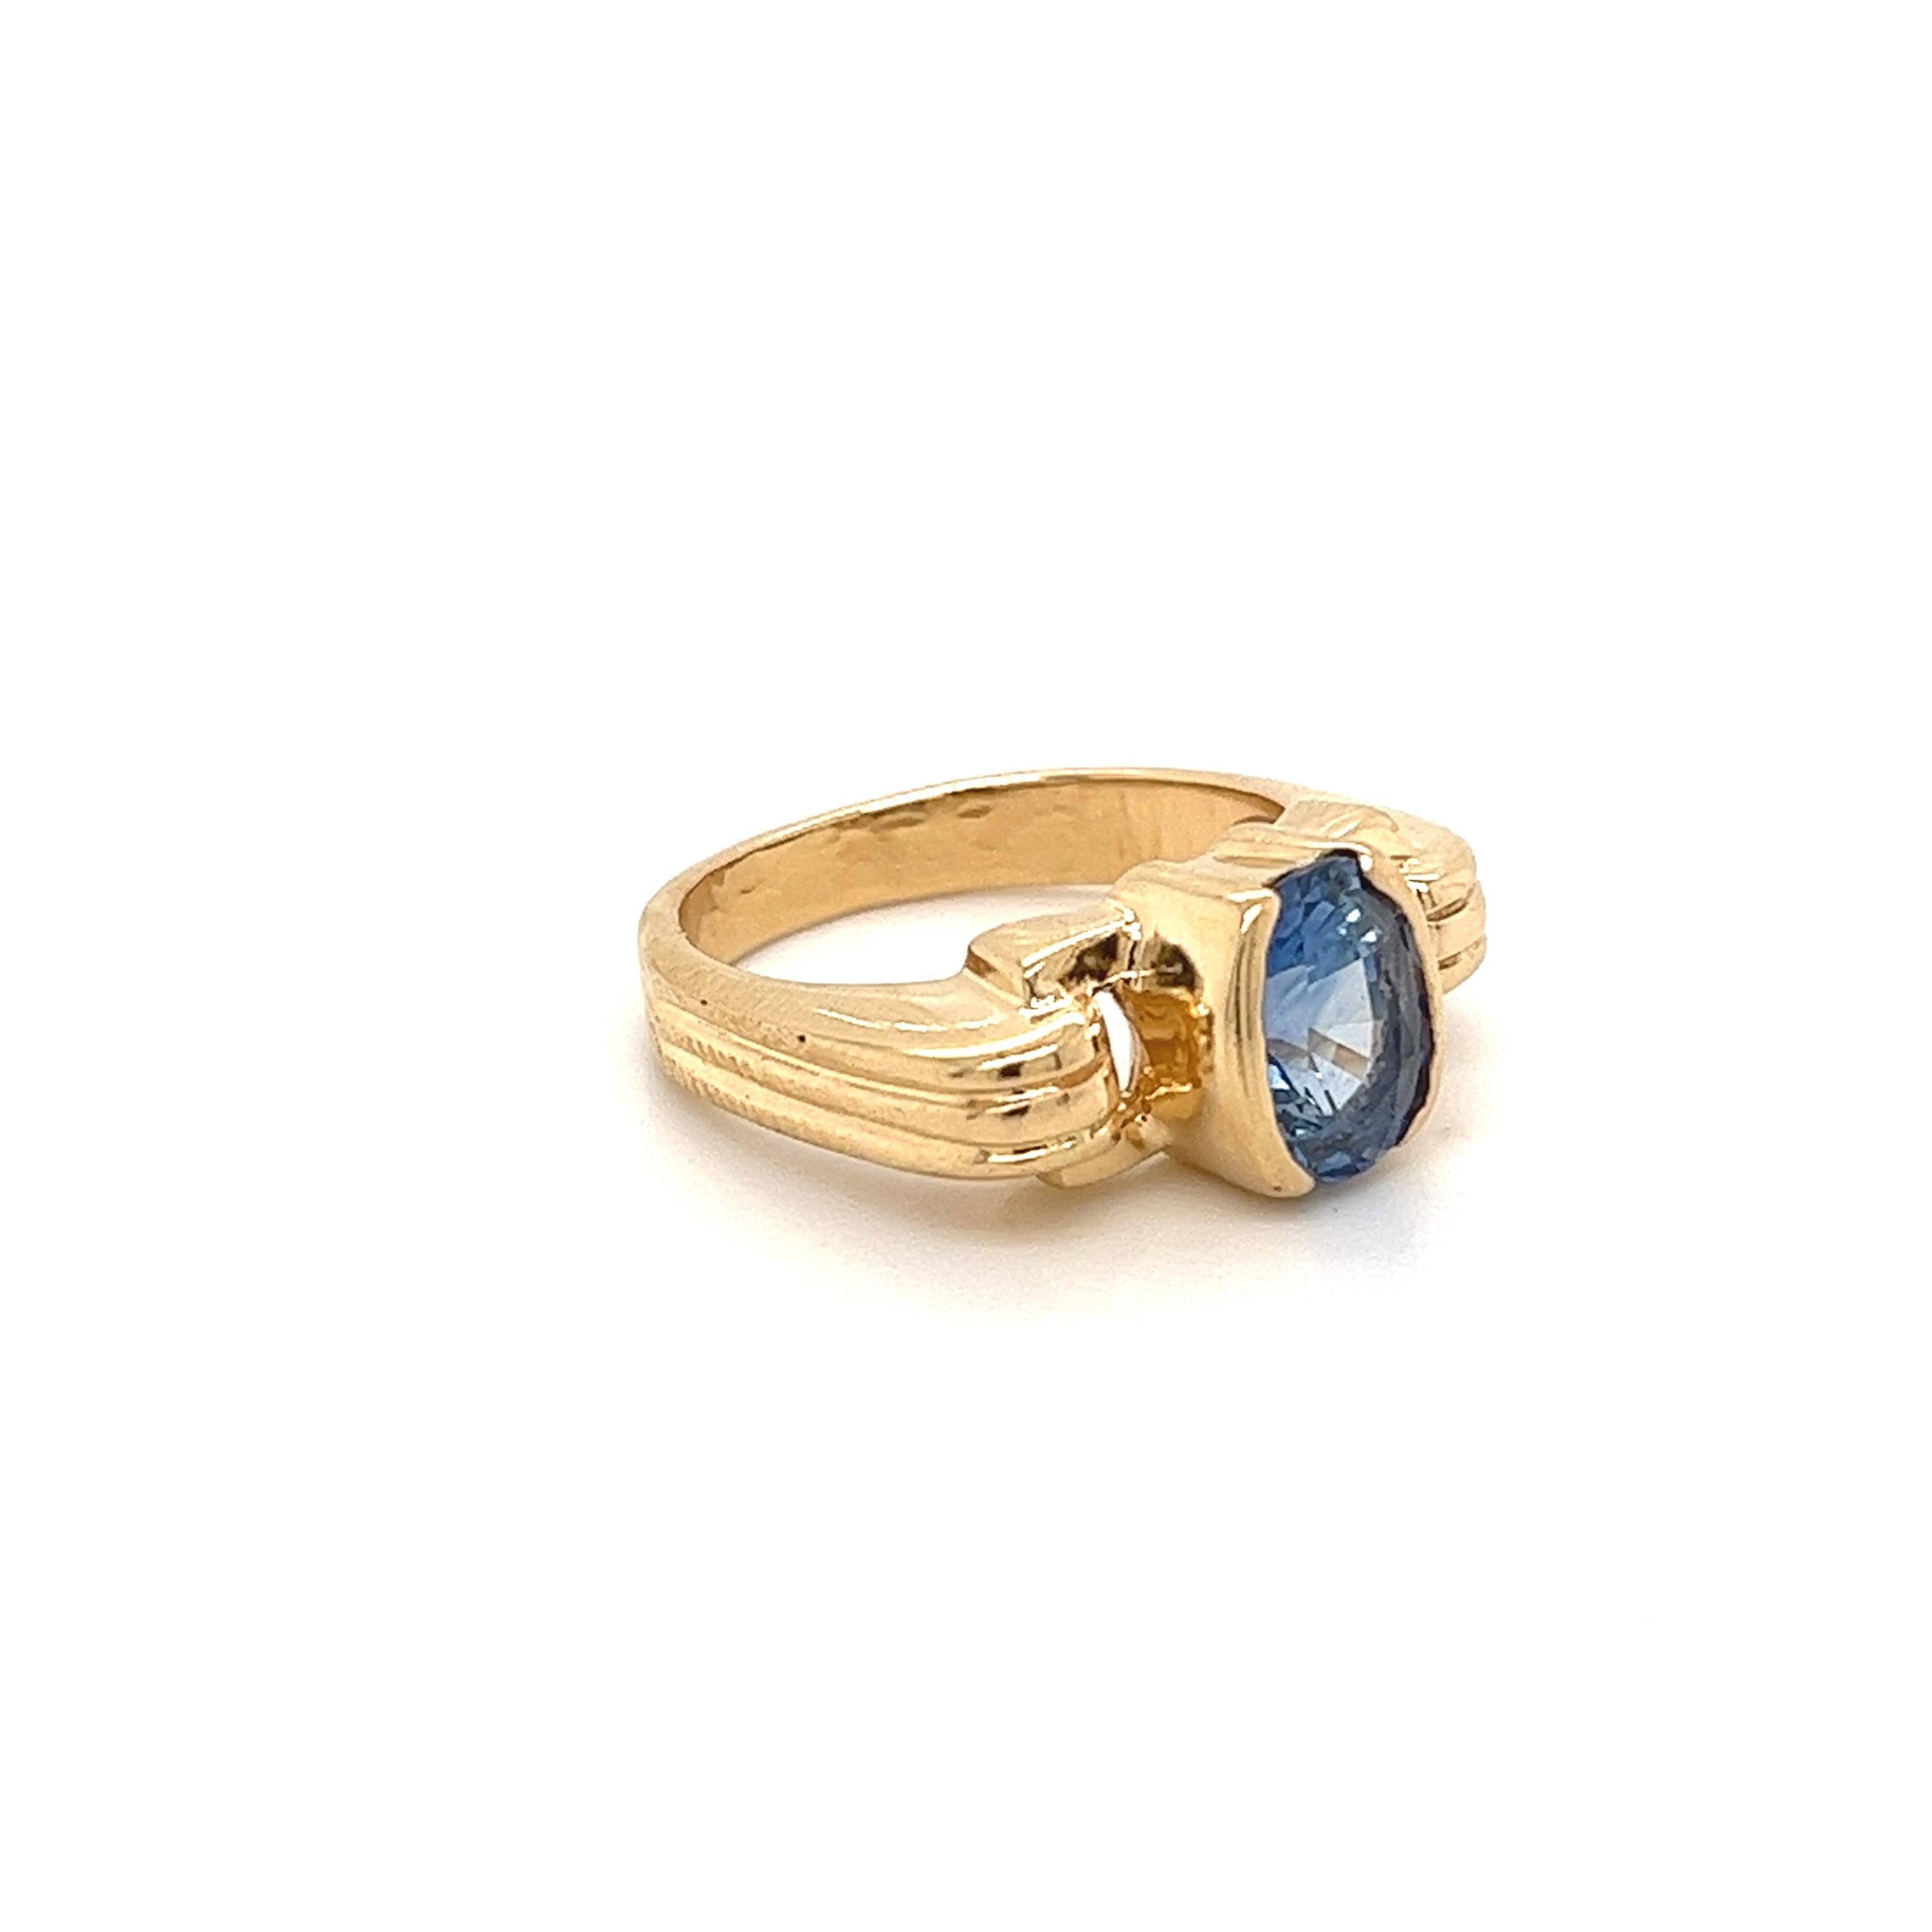 Saphir bleu de taille ovale monté dans une monture en or jaune à demi- lunette. La pierre centrale, le saphir, présente un excellent lustre et une teinte bleu profond et vibrante. La monture de la bague d'inspiration art déco est réalisée en or